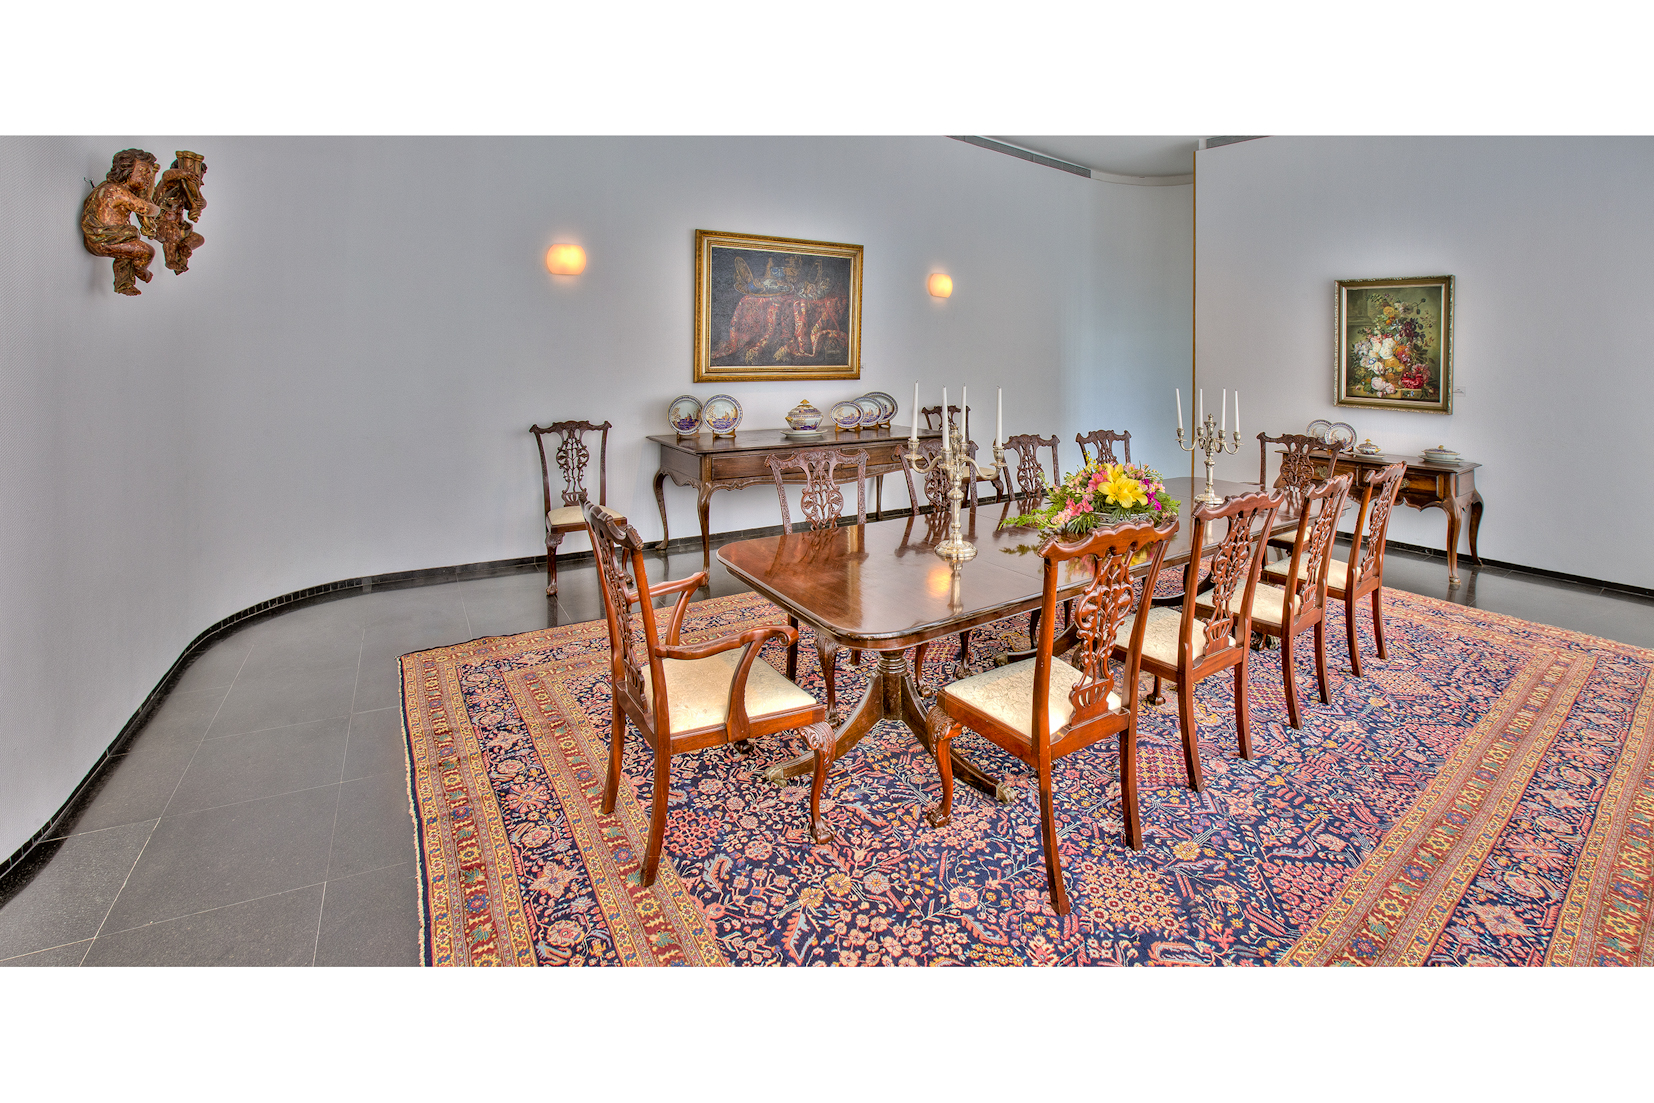 A sala de almoço, intervenção de 1992 autorizada por Oscar Niemeyer, é mobiliada com mesa e doze cadeiras inglesas da escola Chippendale e duas outras mesas brasileiras. Destacam-se tela ""Vaso sobre tapete"", de autoria de Comelis de Heem, e o quadro ""Flores"", assinado por Jan van Huysum, artistas da escola flamenga do século XVII. Além dessas peças, a sala é também decorada com dois anjinhos do barroco mineiro e um conjunto de louça da Companhia das Índias (século XVII).


